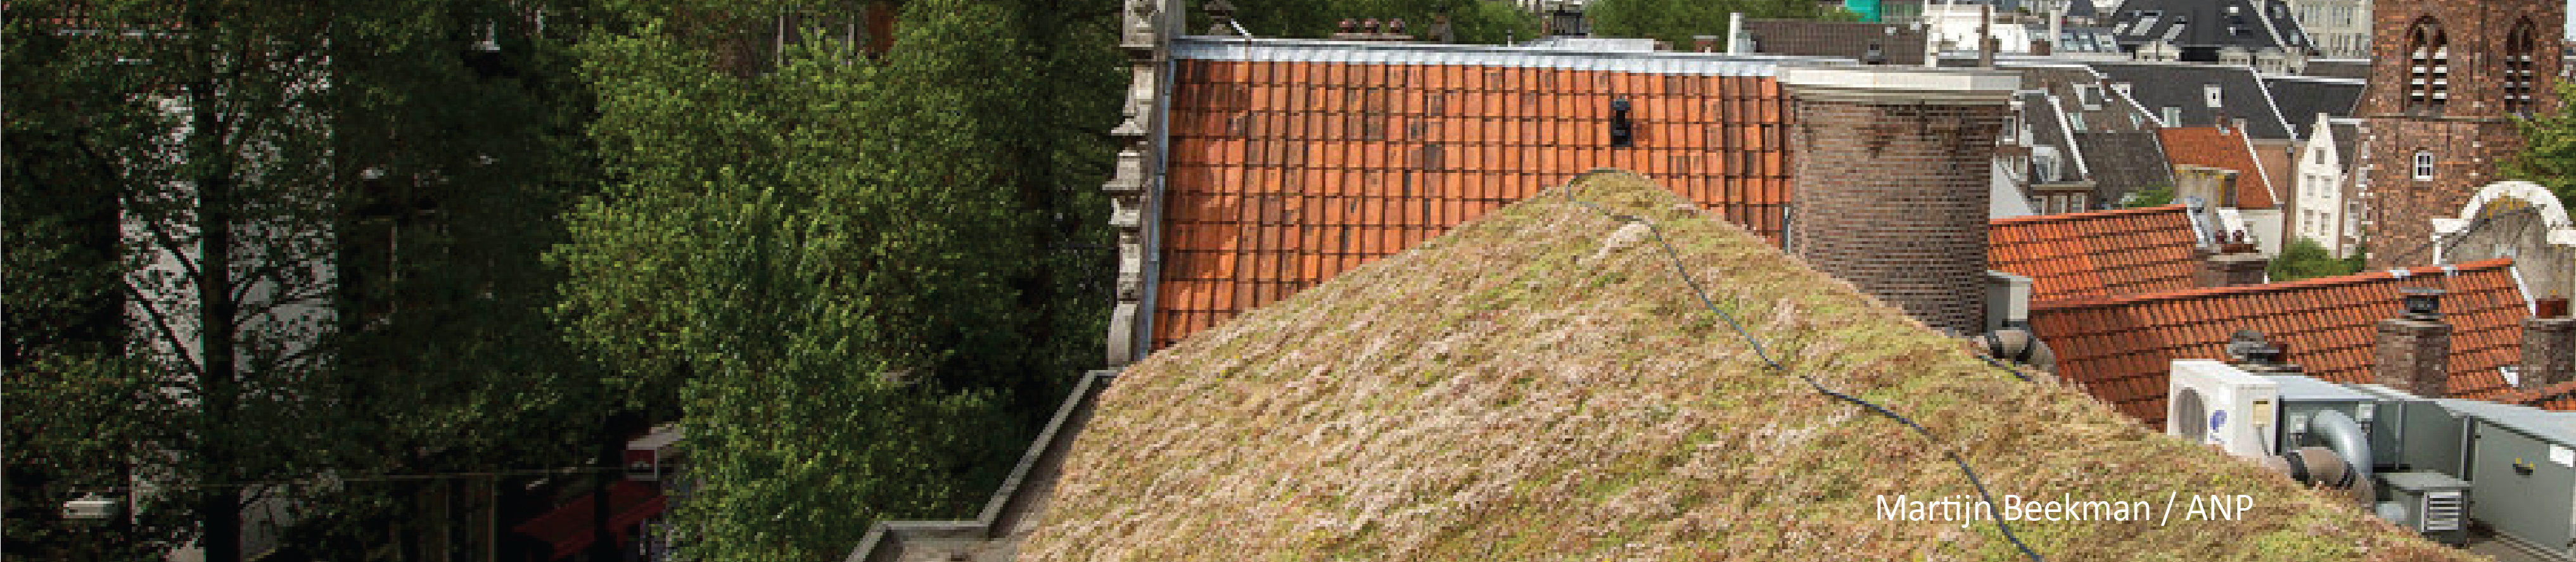 Gaat een groen dak echt twee keer zo lang mee als een normaal dak? - Volkskrant, september 2019   